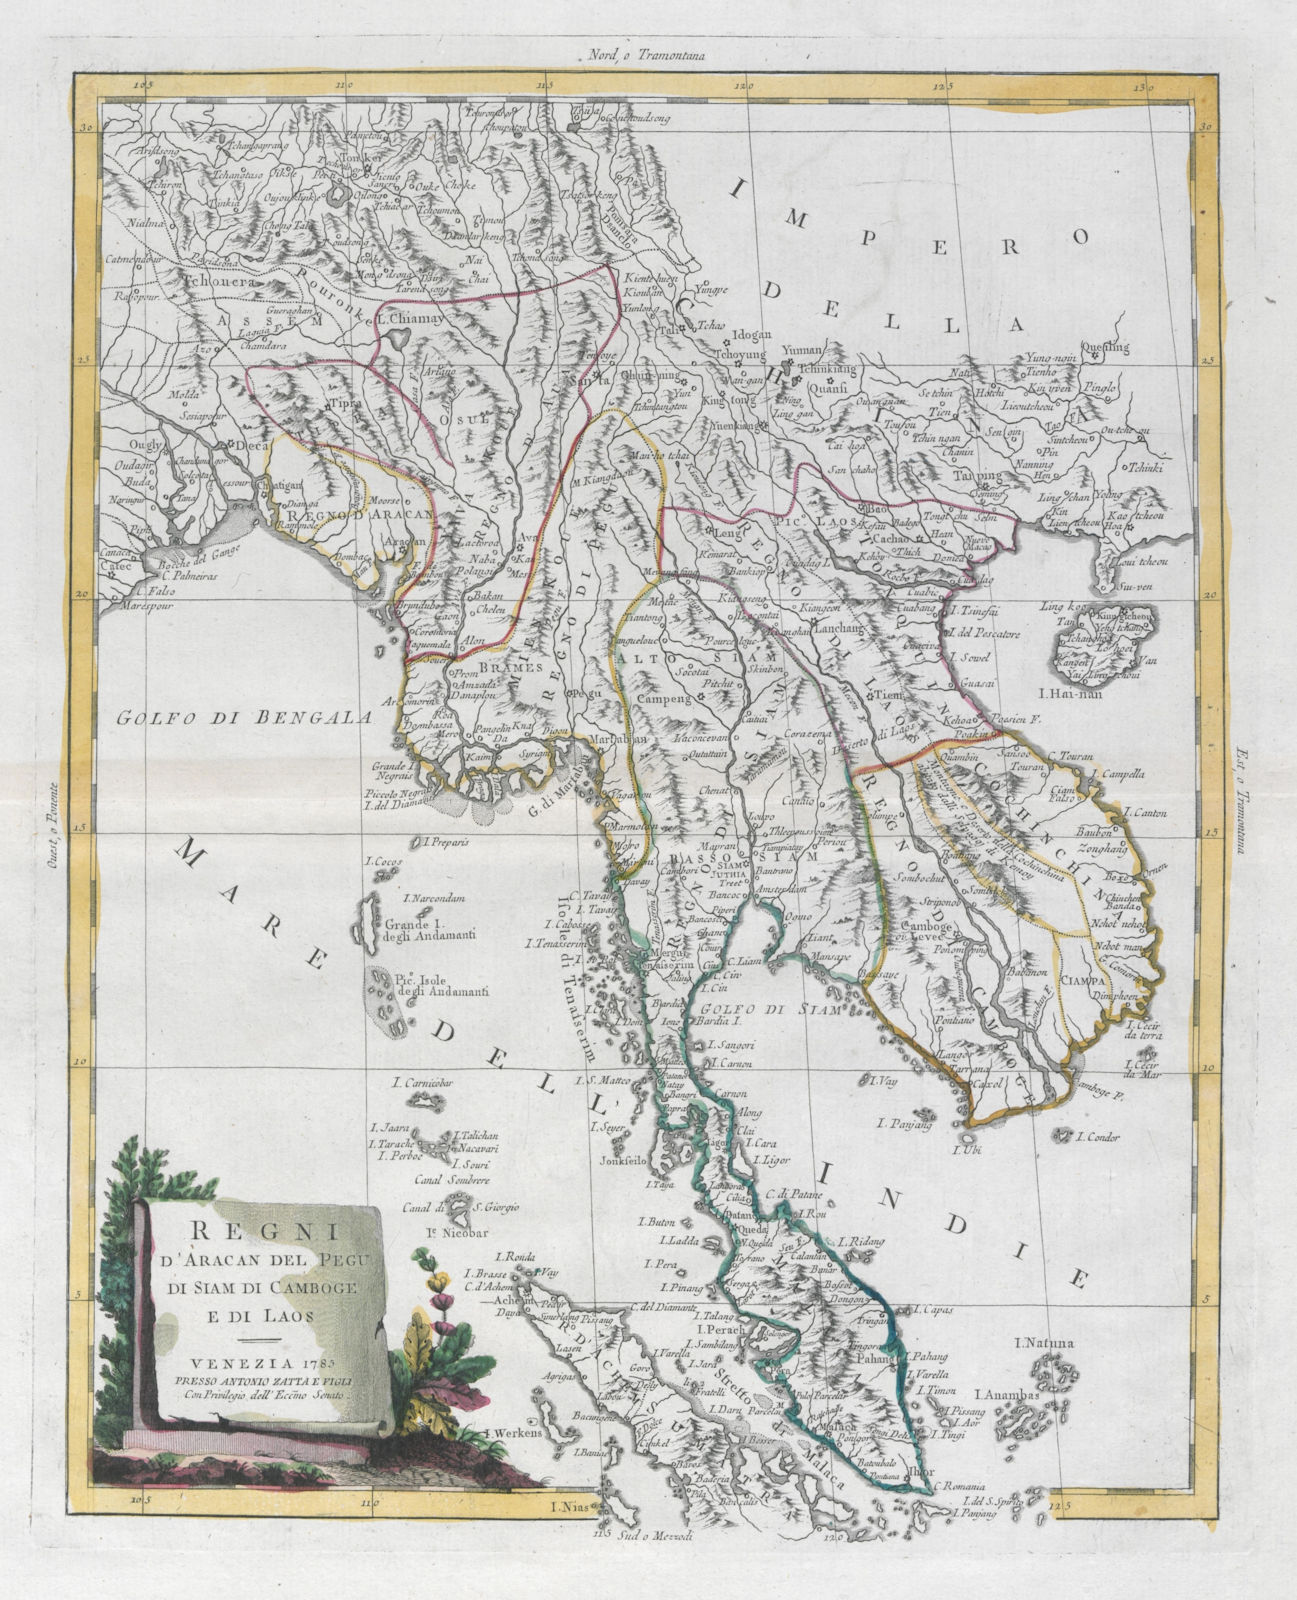 "Regni d'Aracan del Pegu di Siam di Camboge e di Laos" Indochina. ZATTA 1785 map